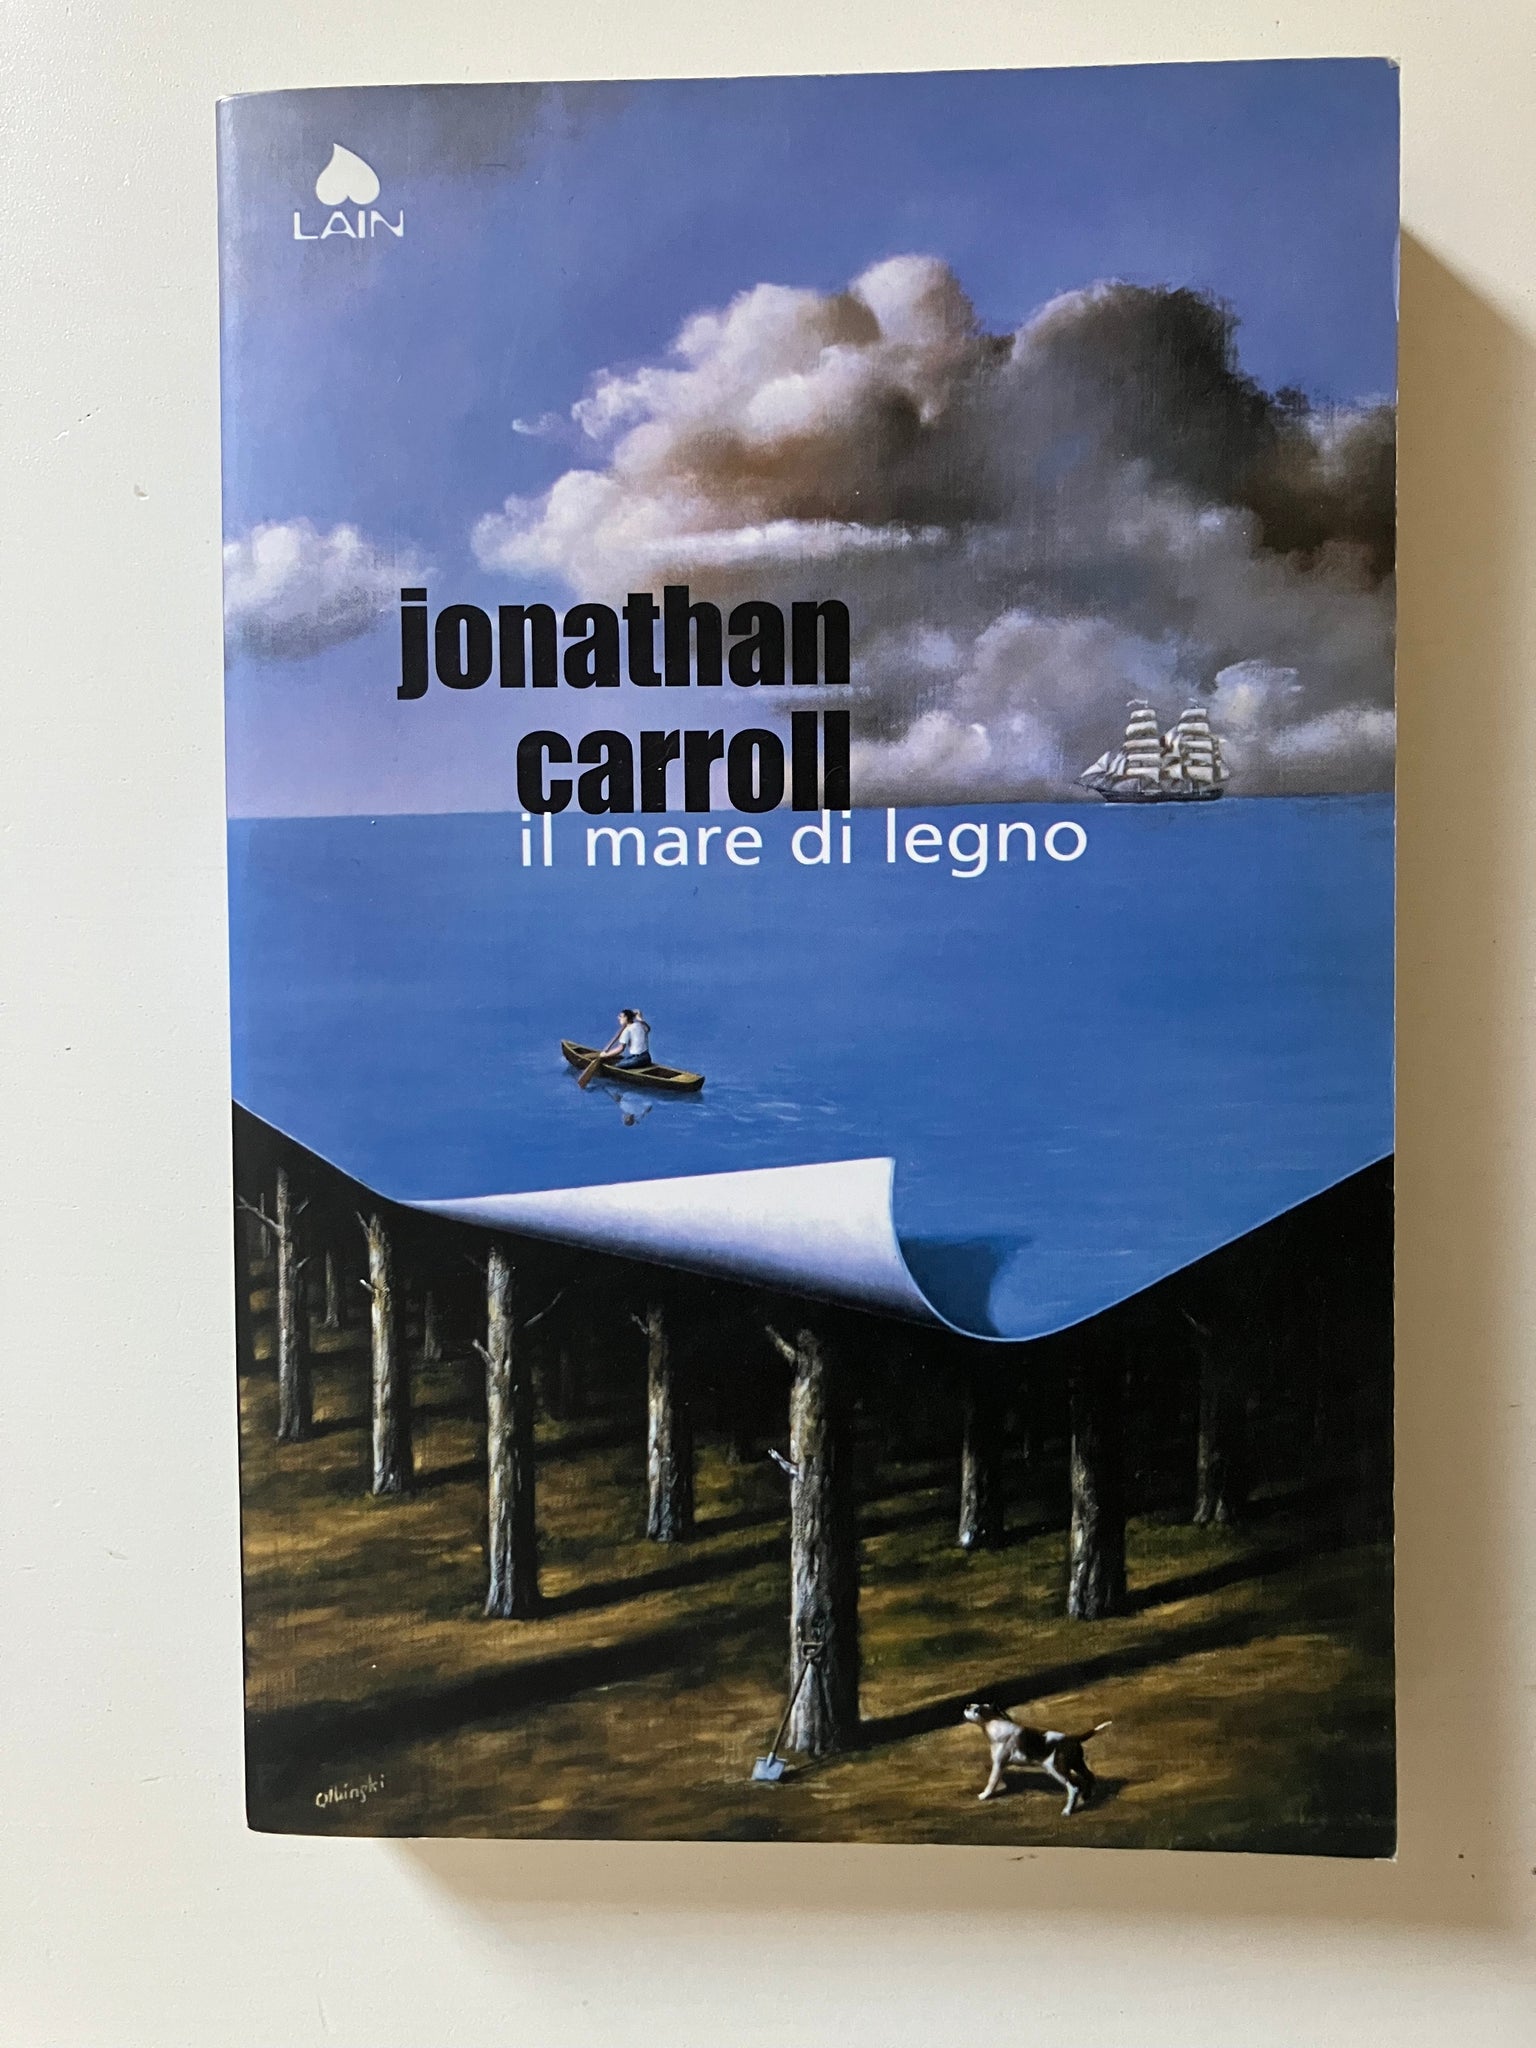 Jonathan Carroll - Il mare di legno